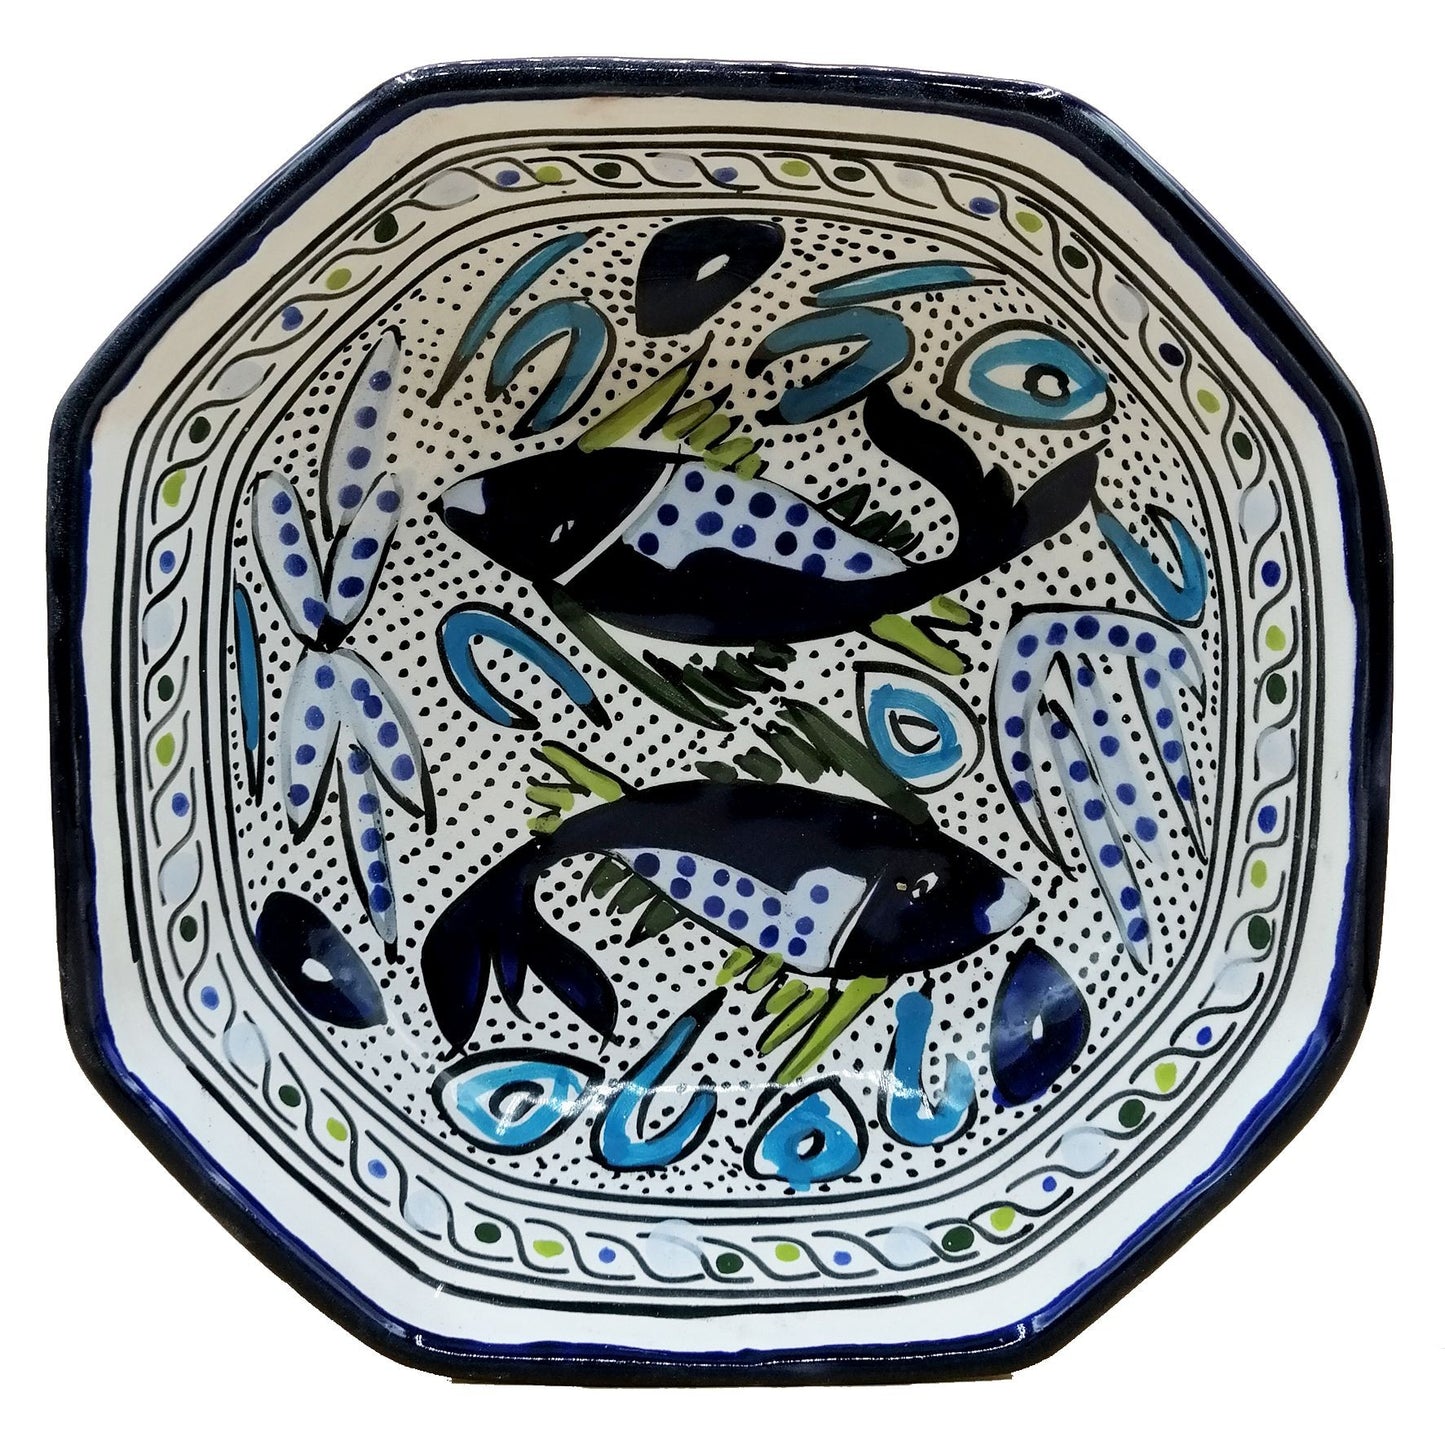 Piatto primo ciotola salse contorni pesce Ceramica Tunisina 0311201236